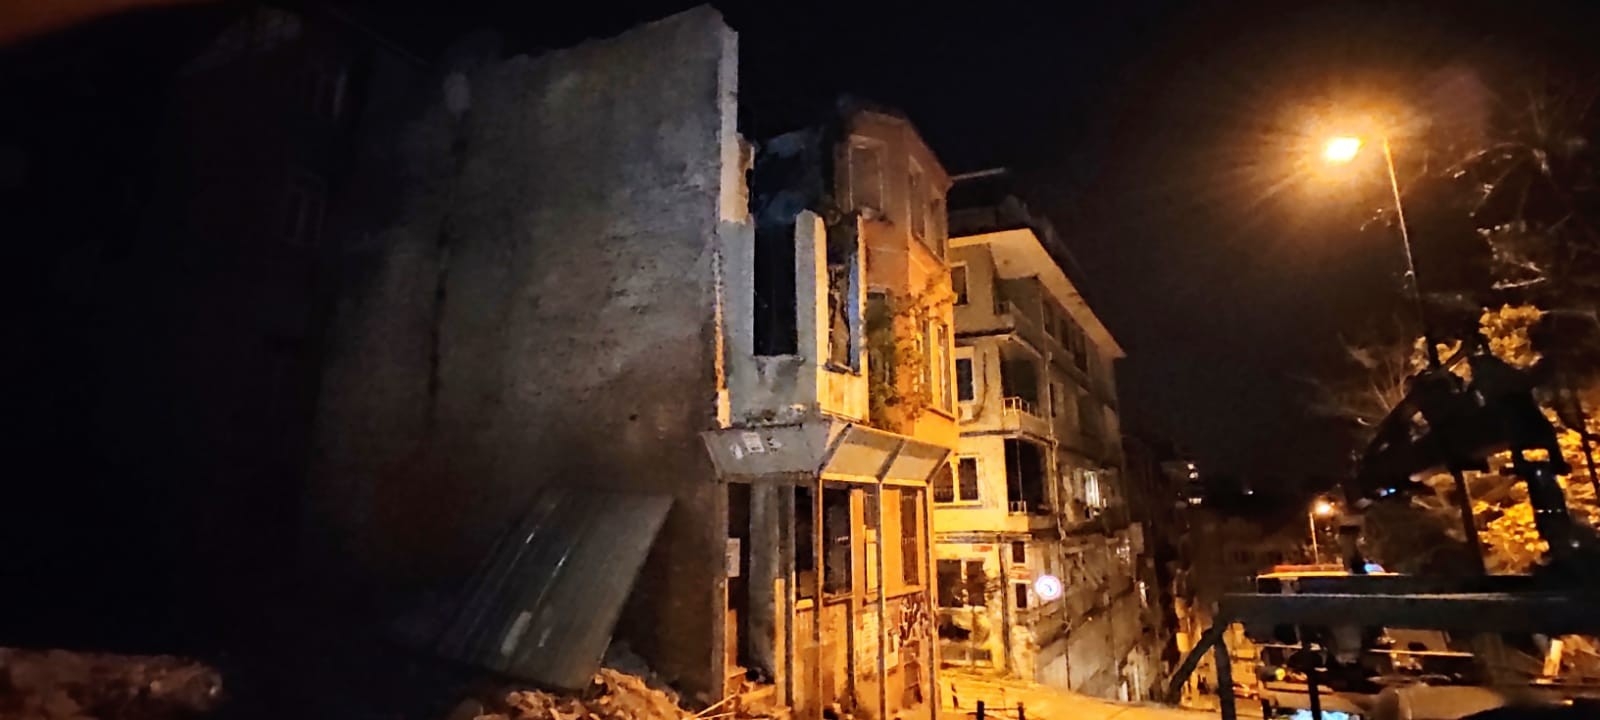 Beşiktaş’ta kullanılmayan iki katlı binada çökme meydana geldi